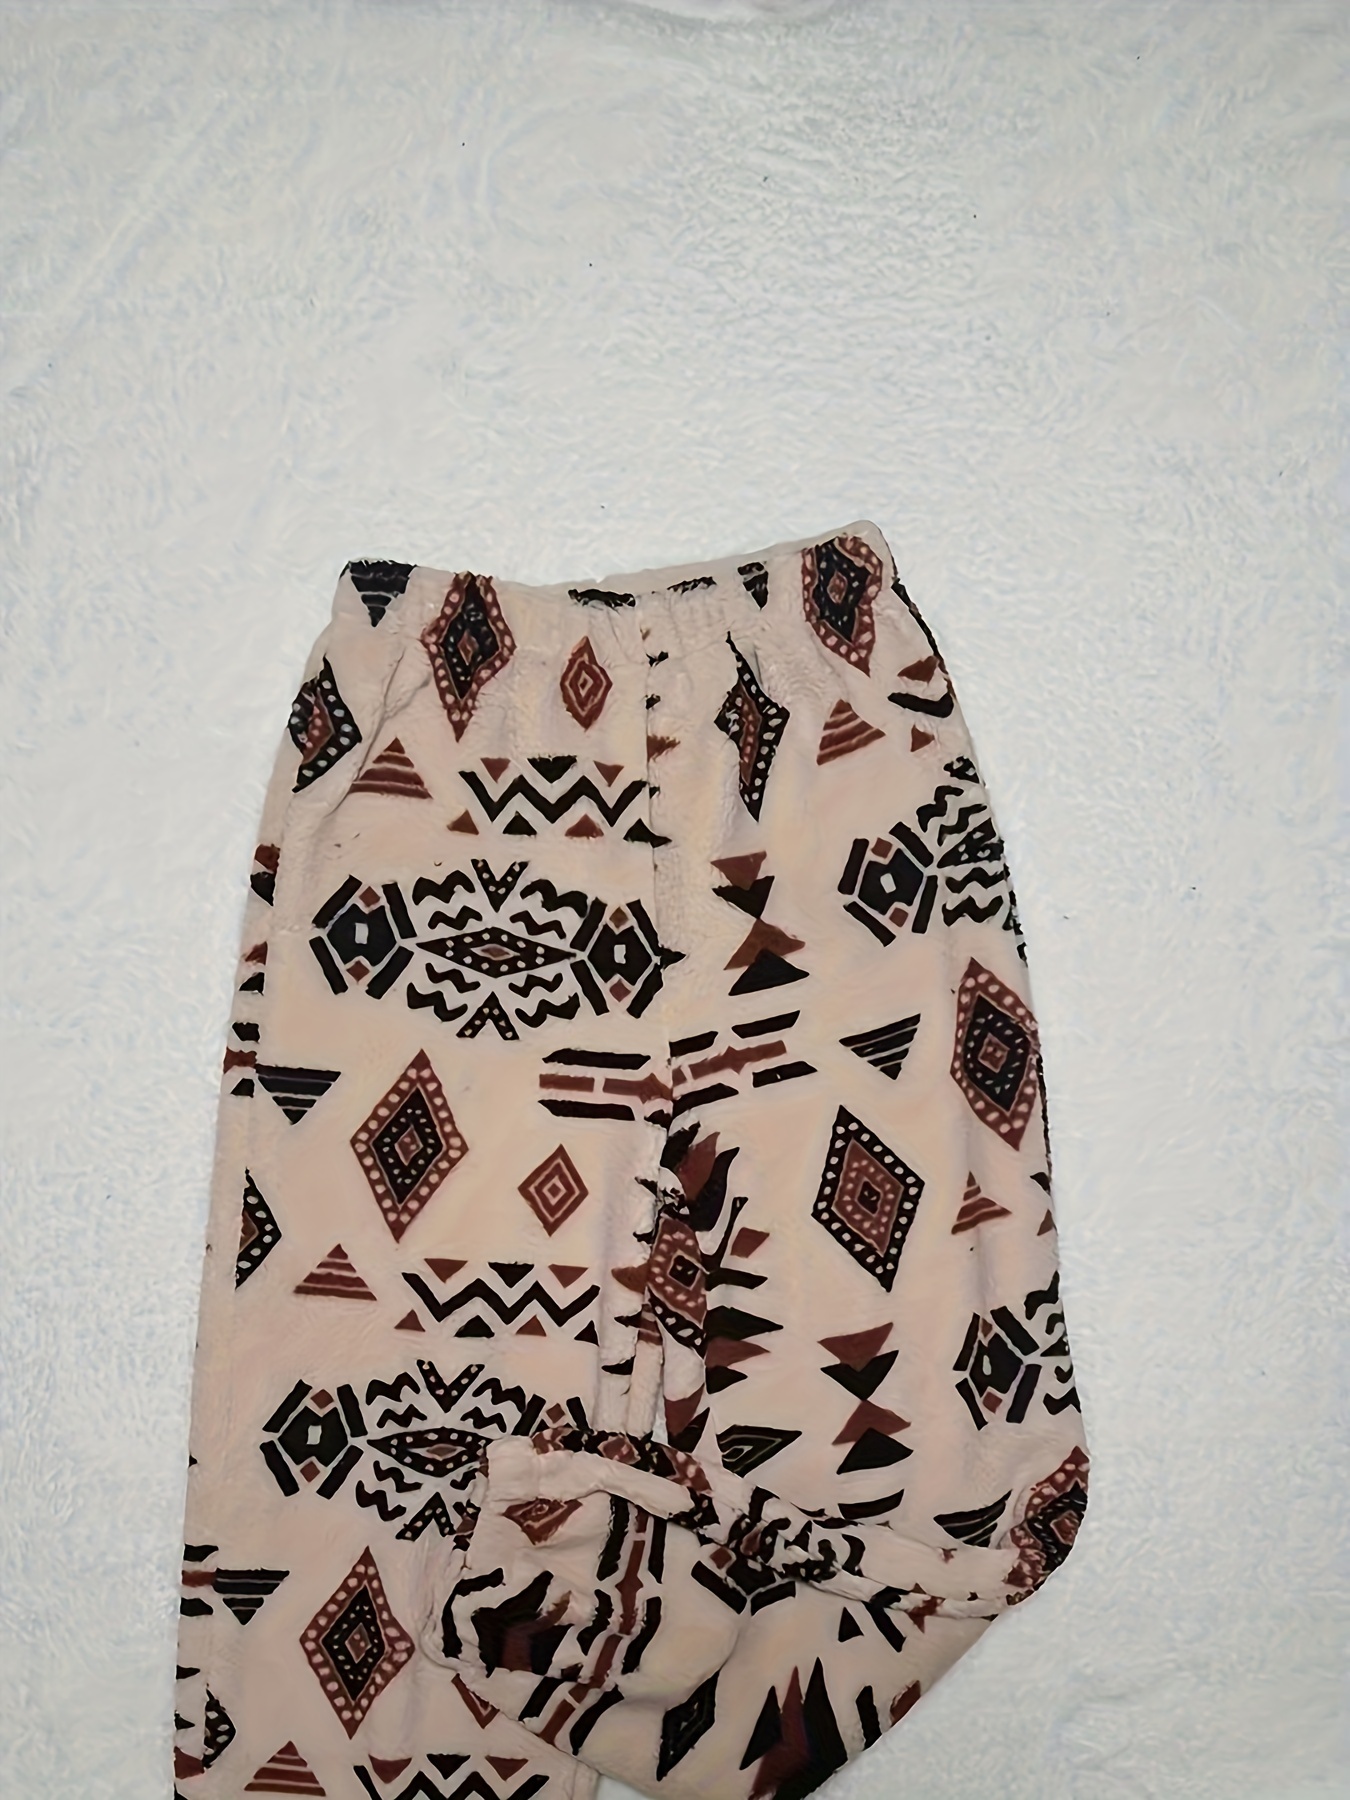 Zara Woman Tribal Aztec Printed Trousers Size 10